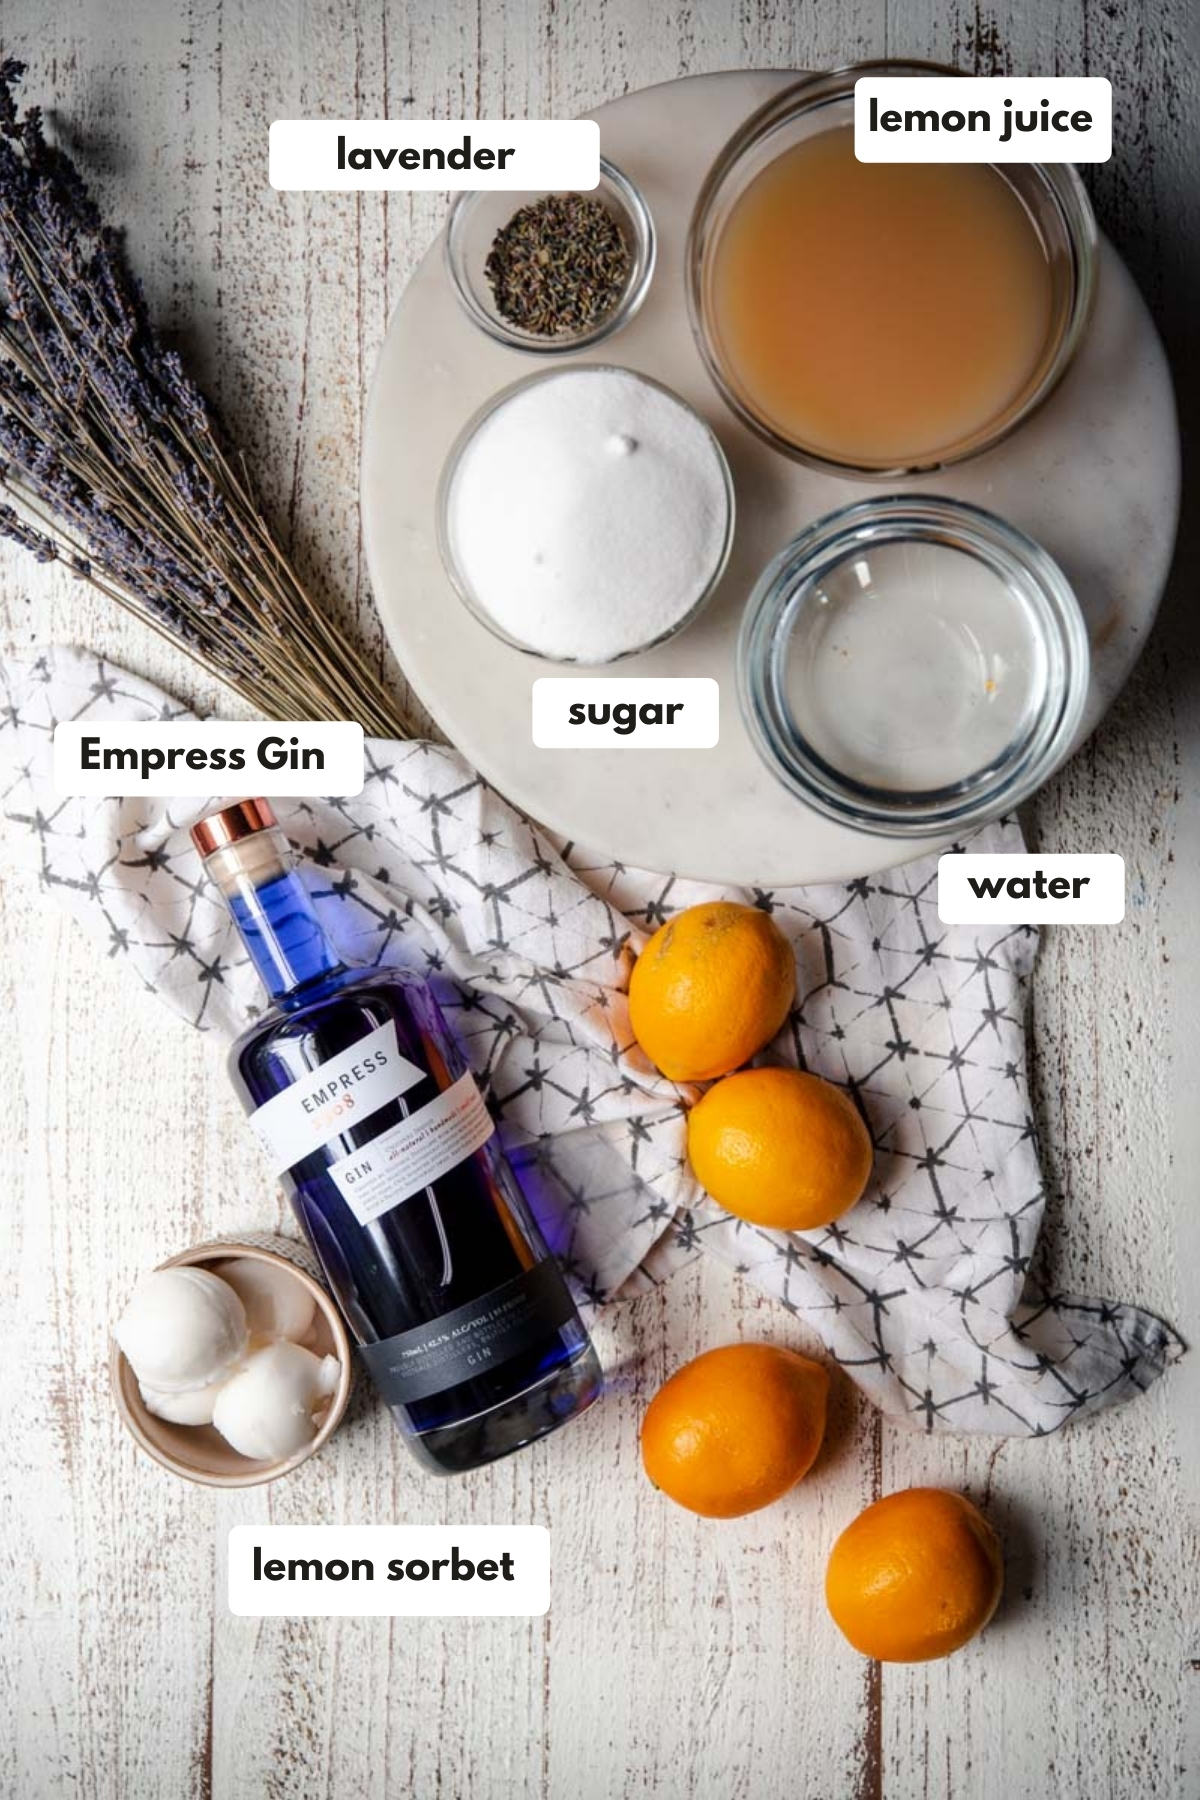 labeled ingredients for lavender lemonade floats